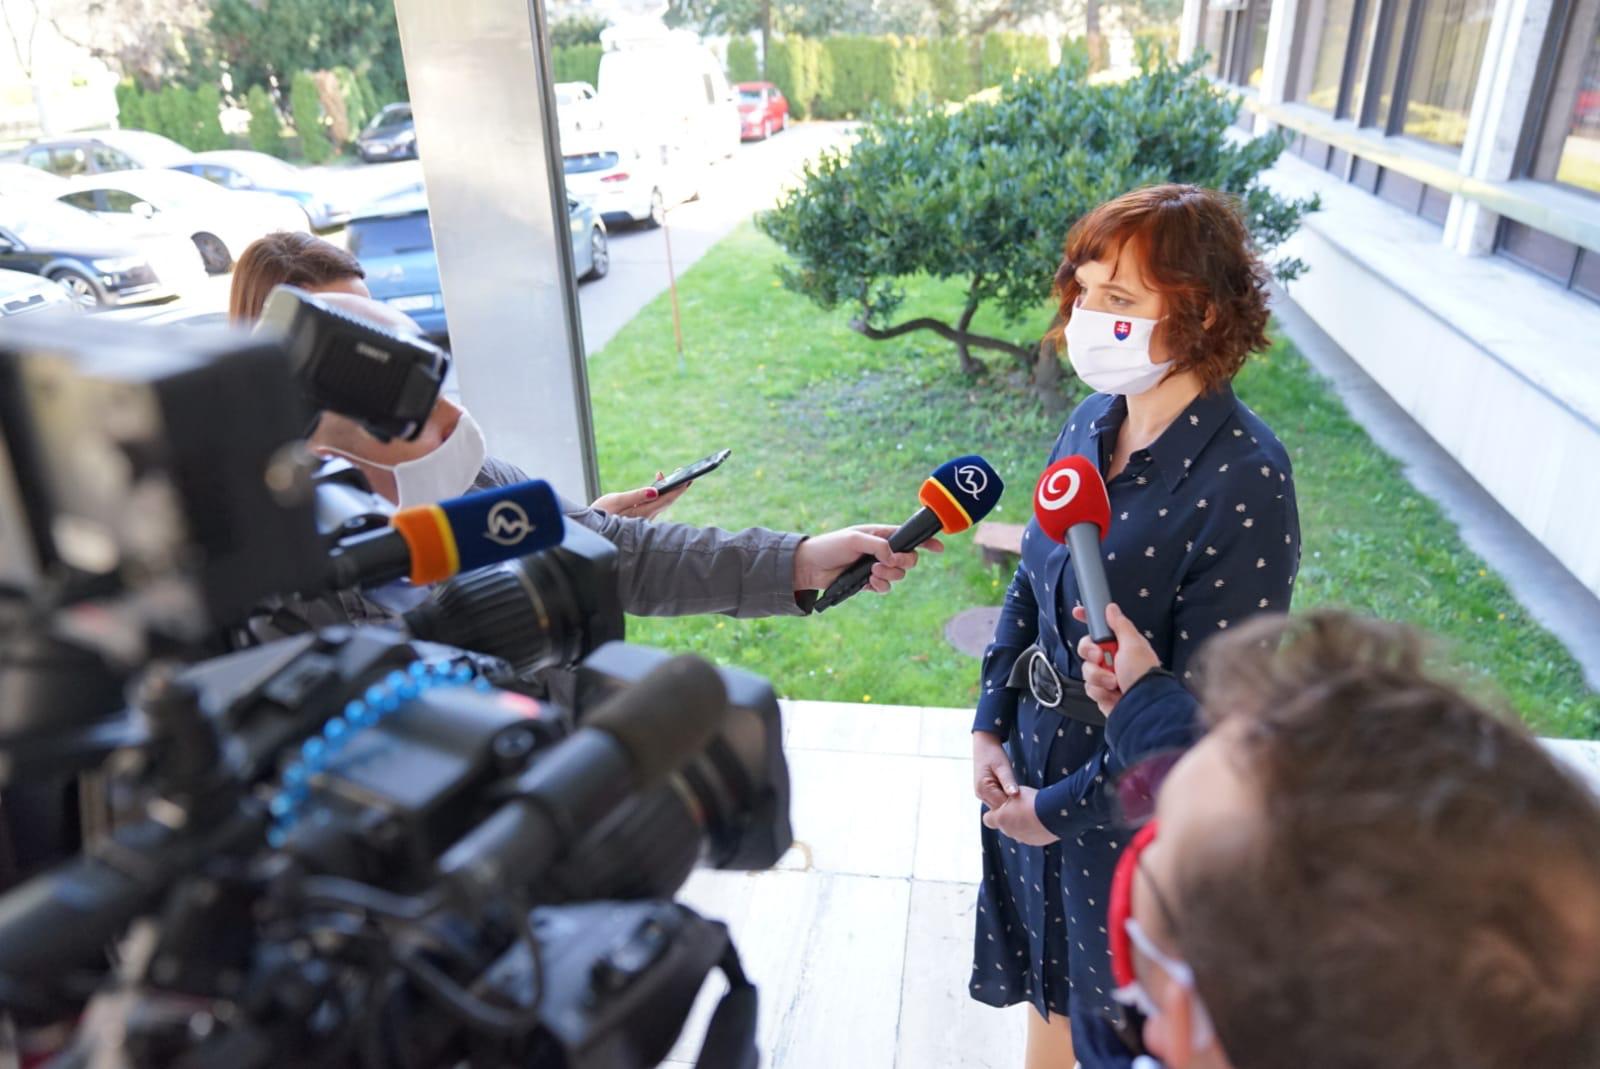 Vicepremiérka Remišová presadila požiadavky Slovenska v Európskej komisii v rámci opatrení proti koronavírusu